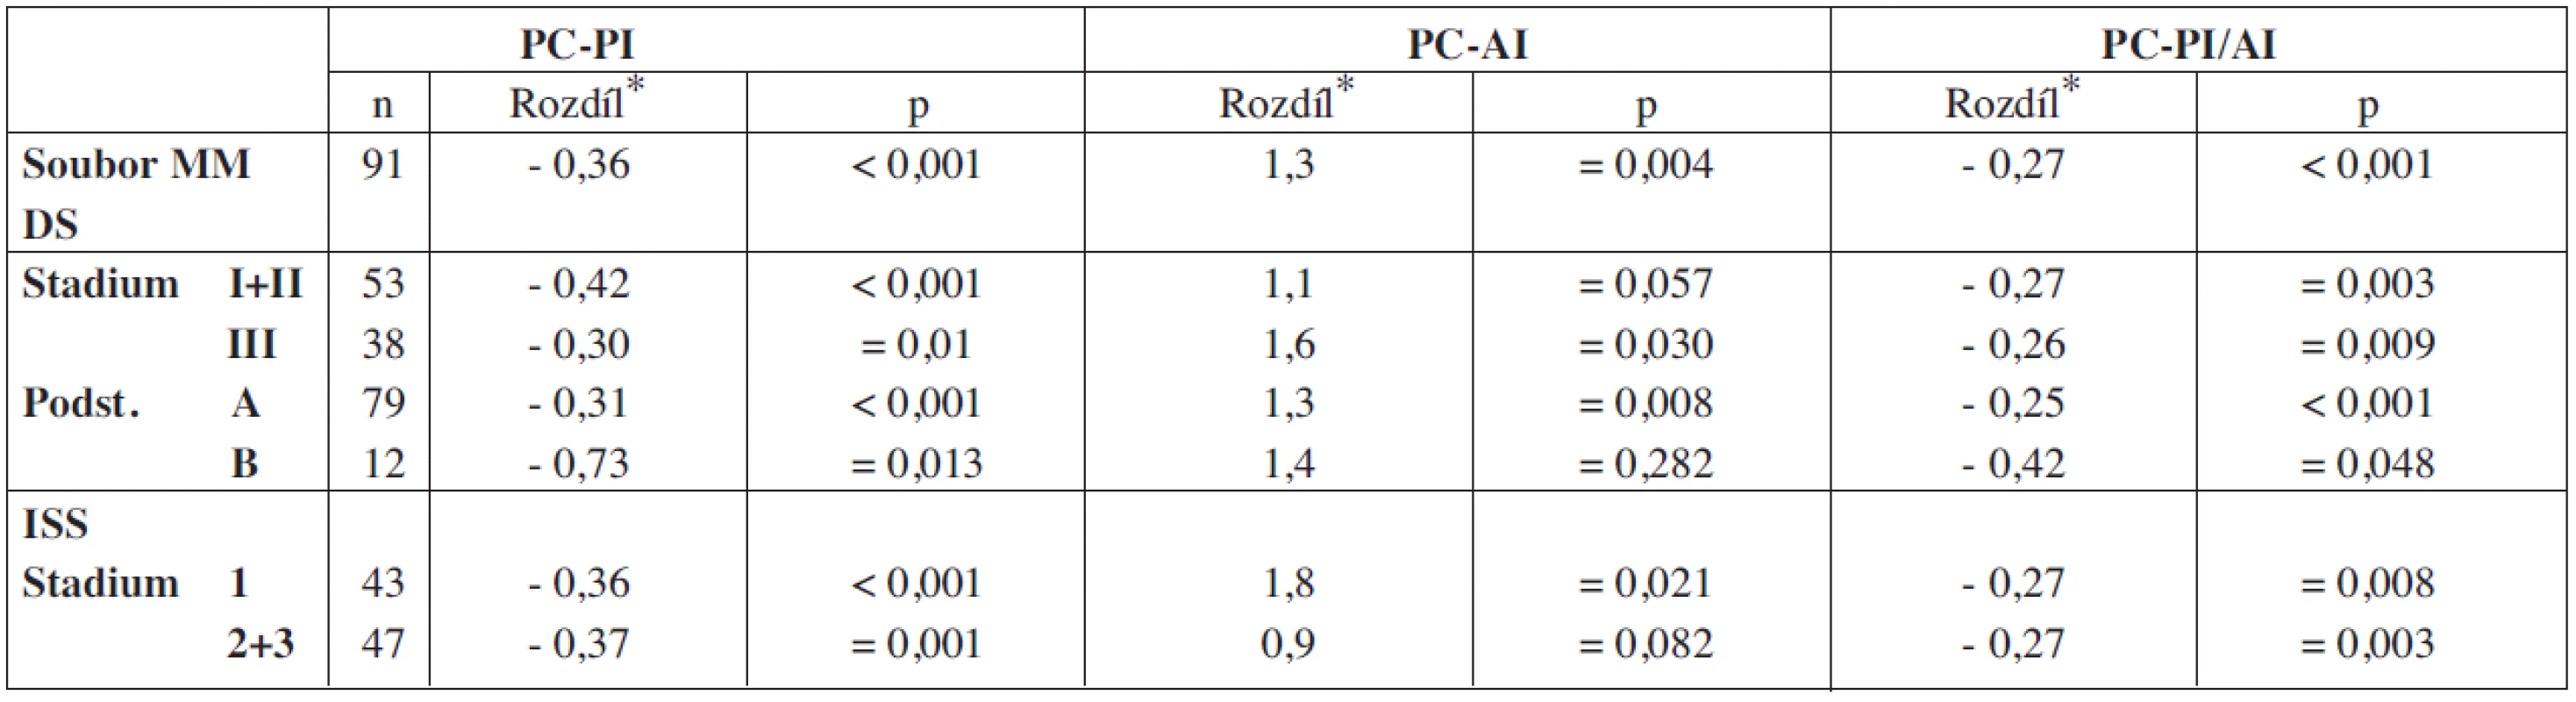 Vyhodnocení rozdílnosti hodnot PC-PI, PC-AI a PC-PI/AI v souborech nemocných vyšetřených při diagnóze MM a po VDT/ASCT.